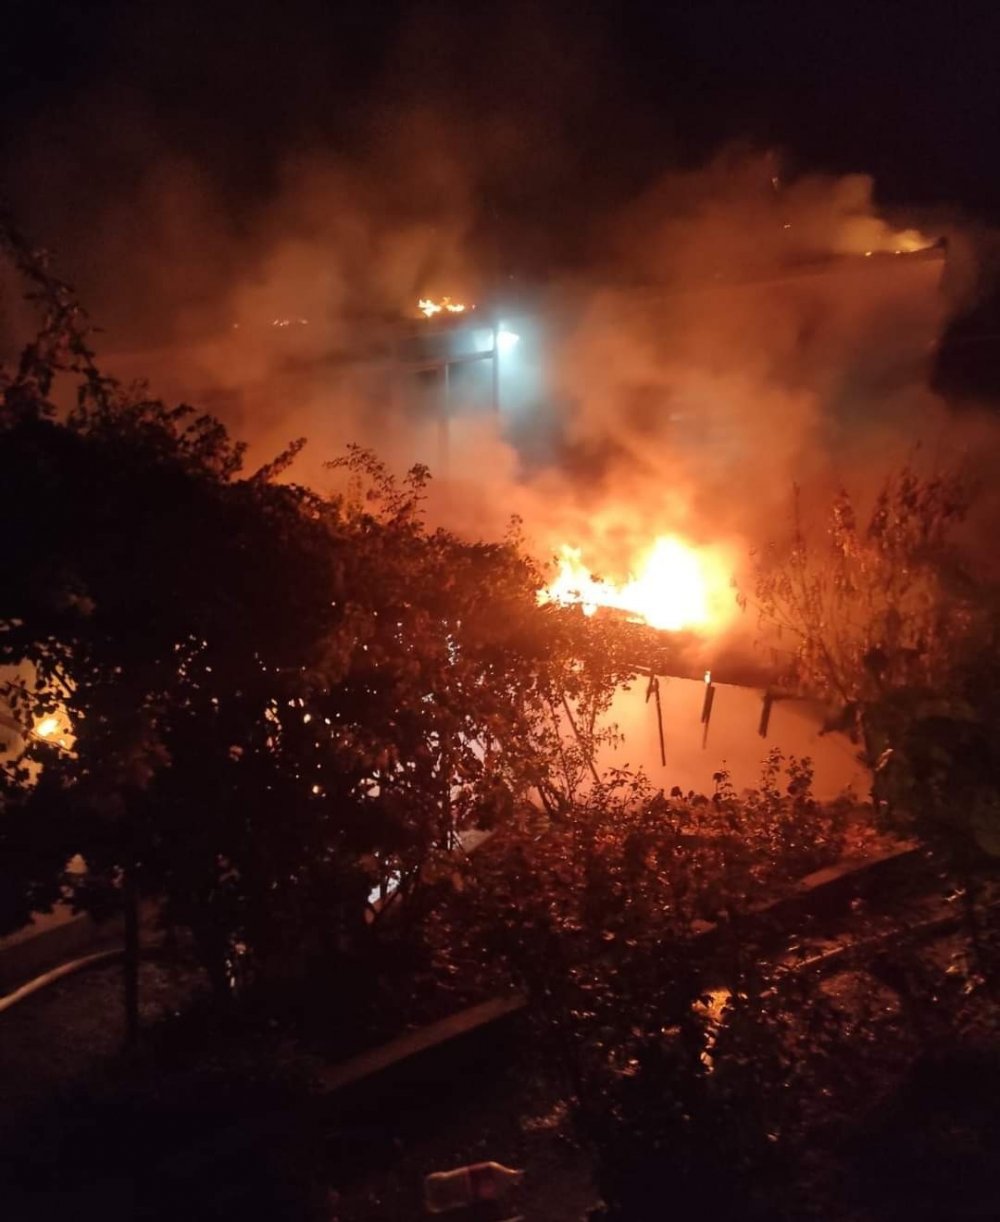 Denizli'nin Çameli ilçesinde alevlerin sardığı binanın çatısındaki yangın, uzun uğraşlar sonucu söndürüldü.